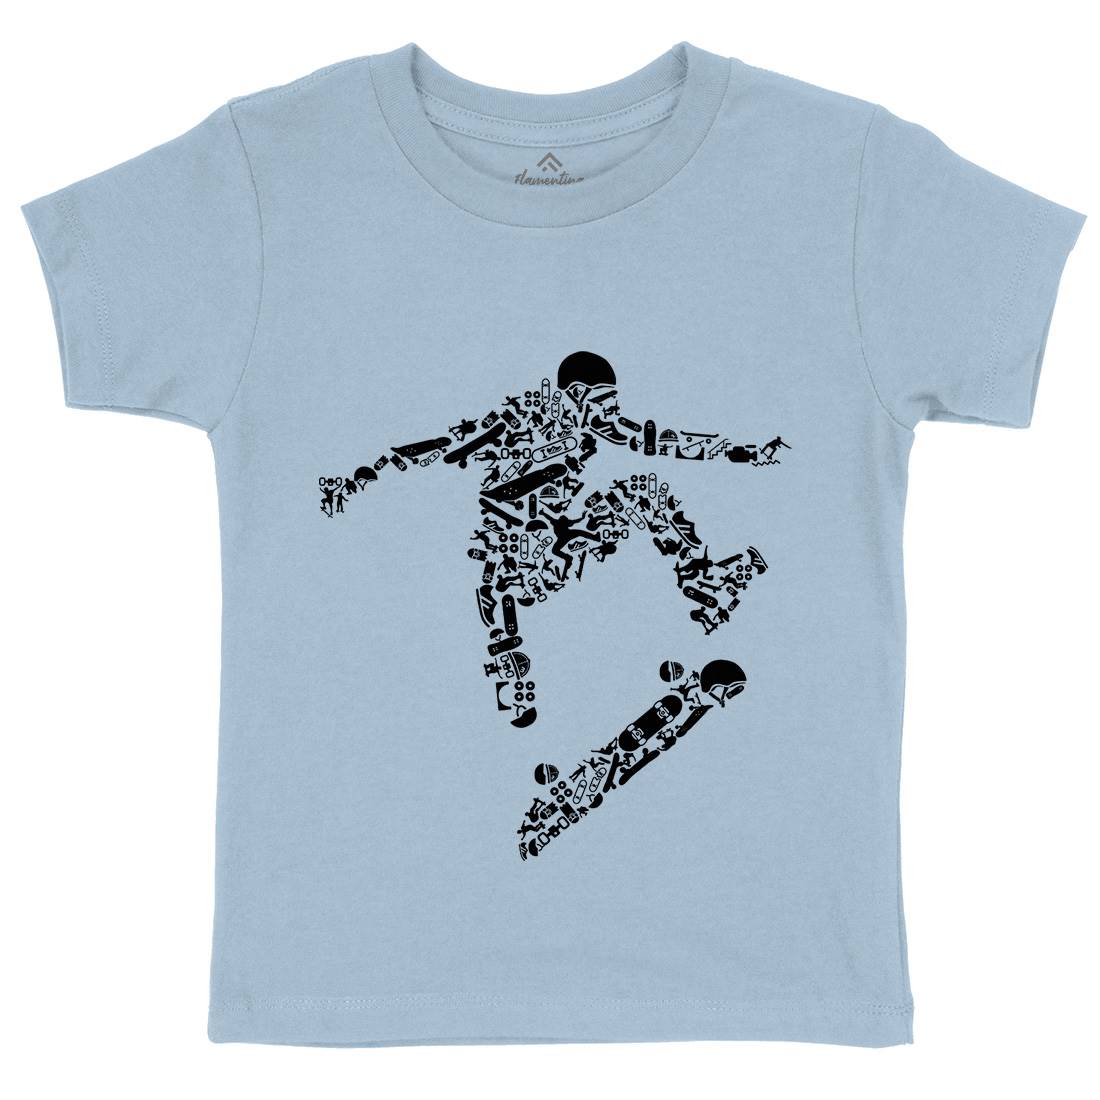 Skater Kids Crew Neck T-Shirt Skate B077